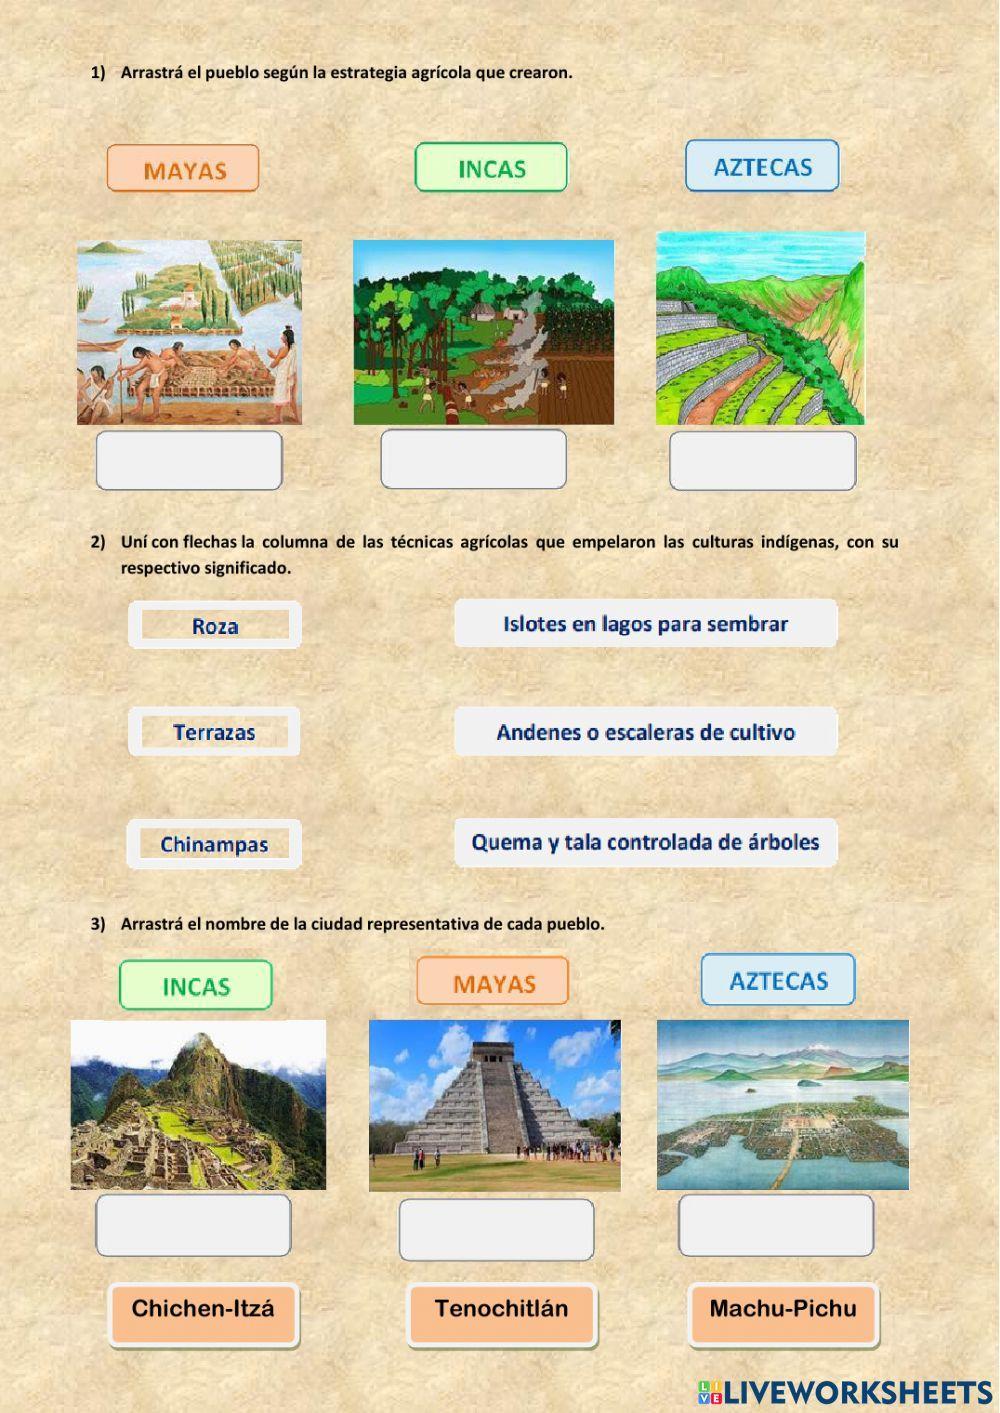 Aztecas, mayas e incas